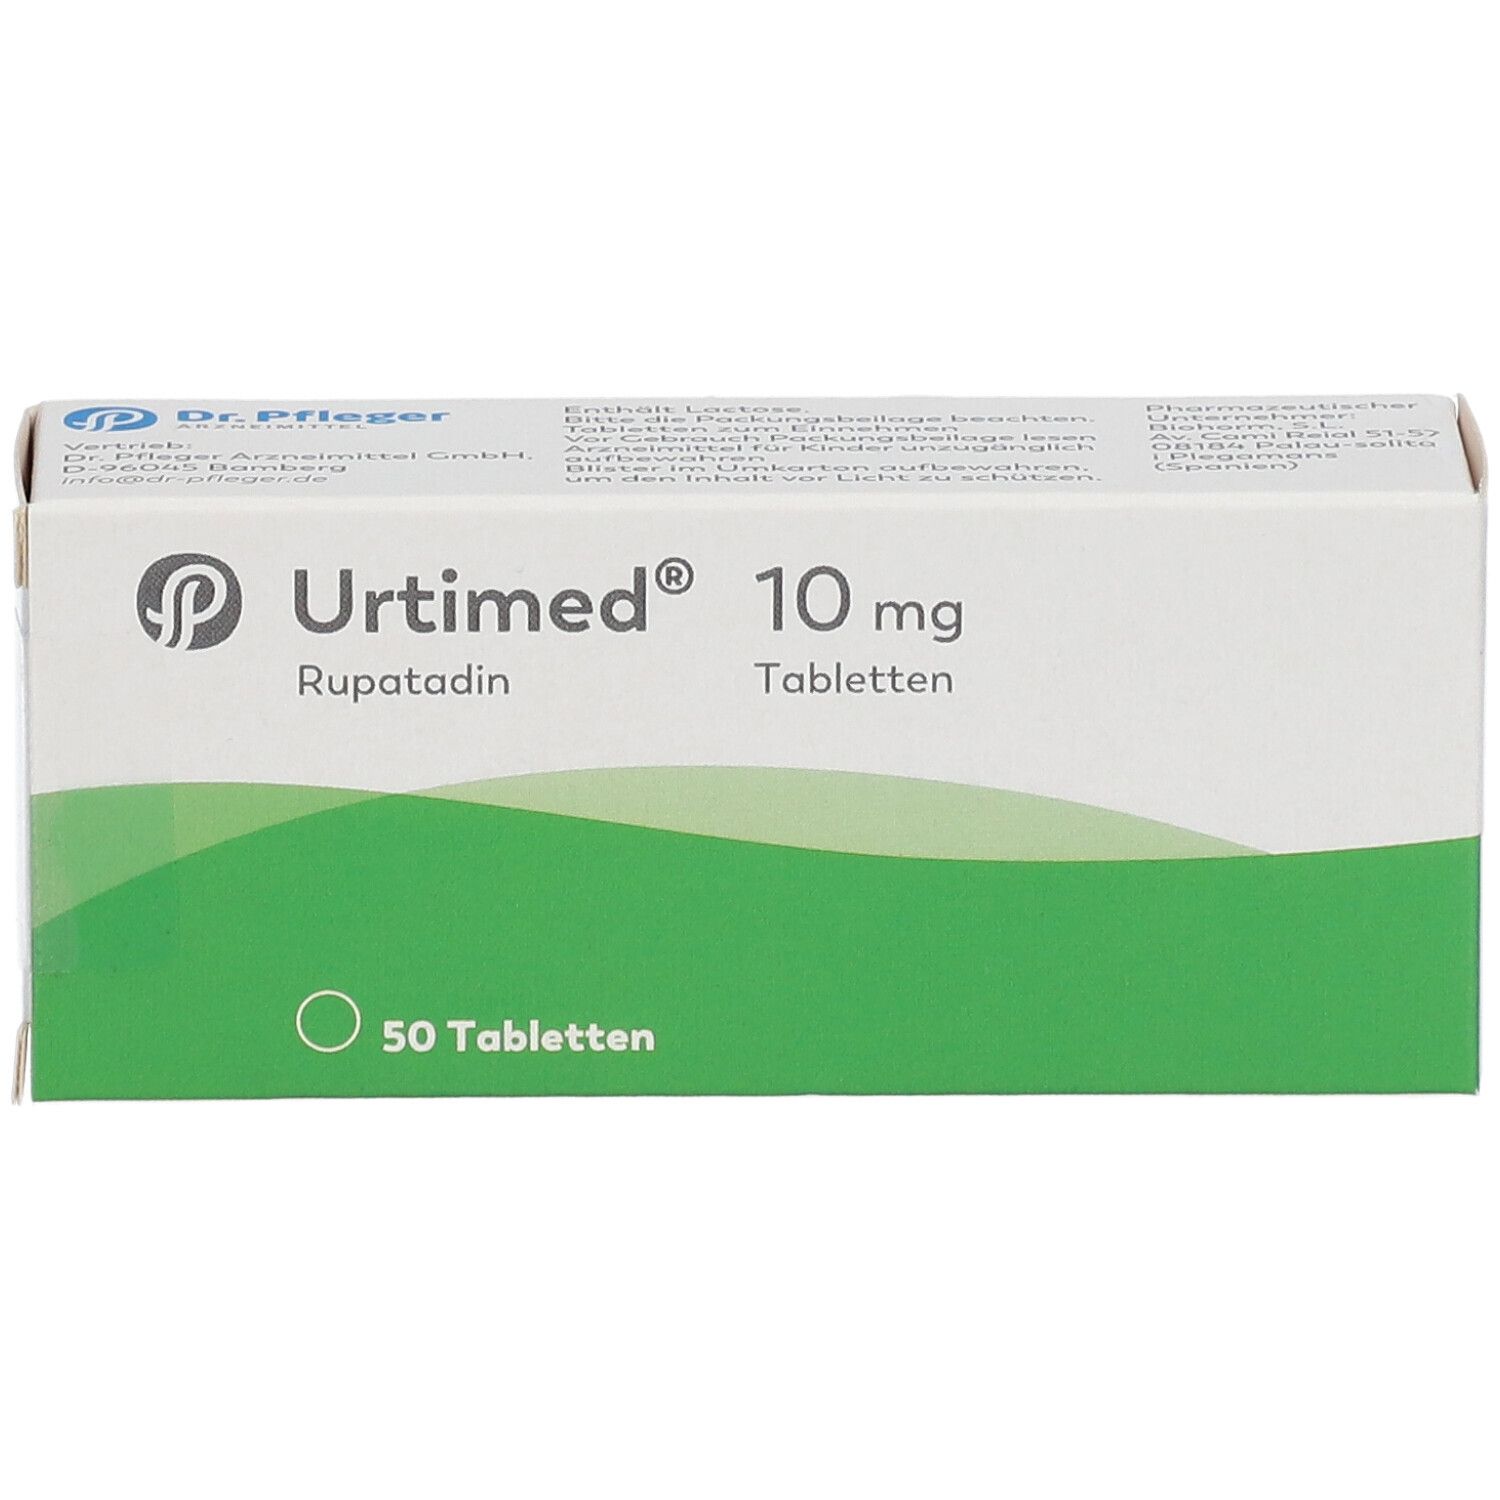 Urtimed® 10 mg